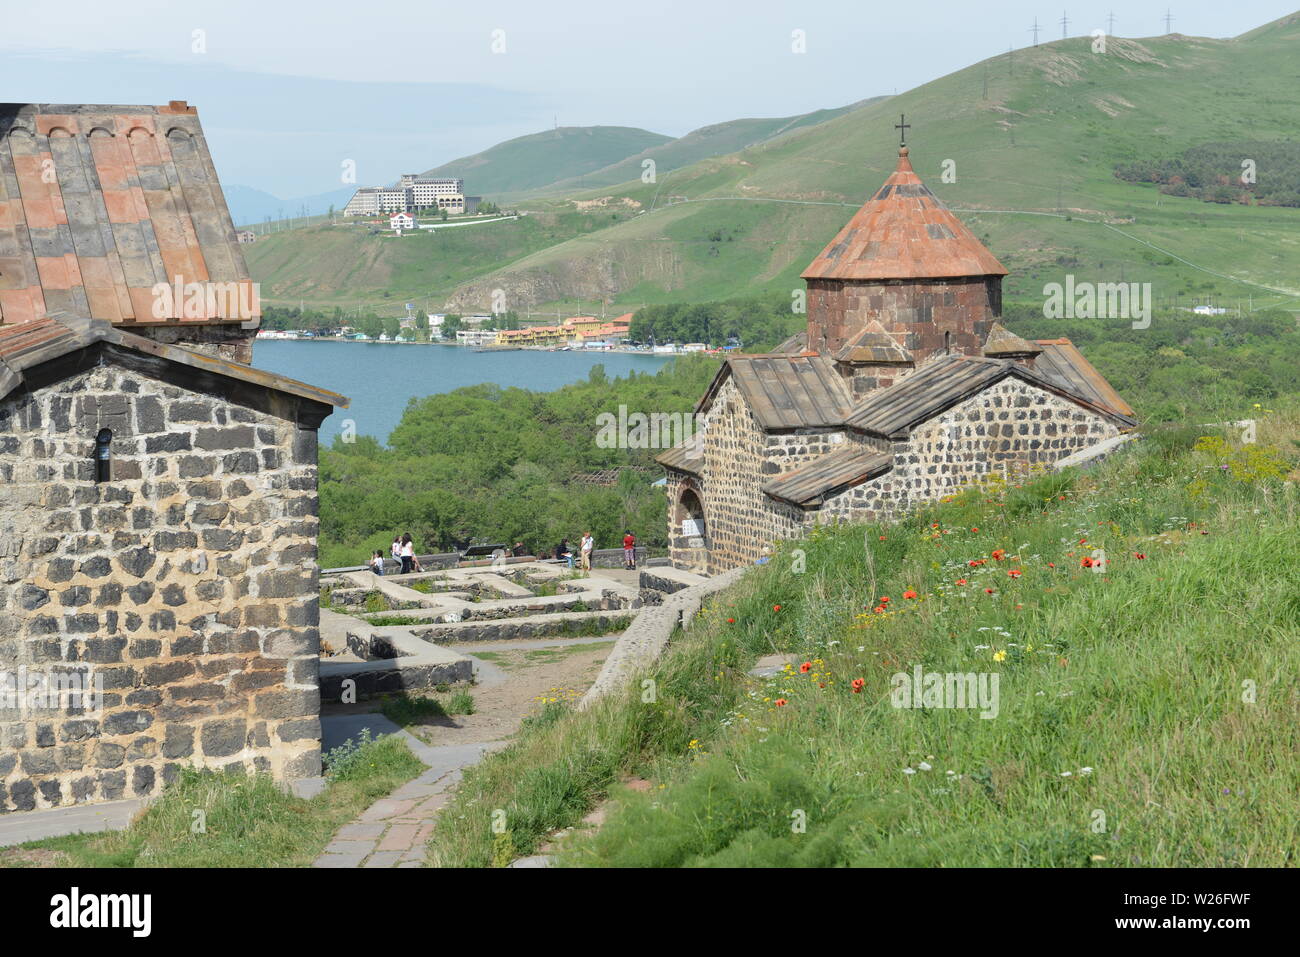 Armenia Tourist tourism travel highlights Stock Photo